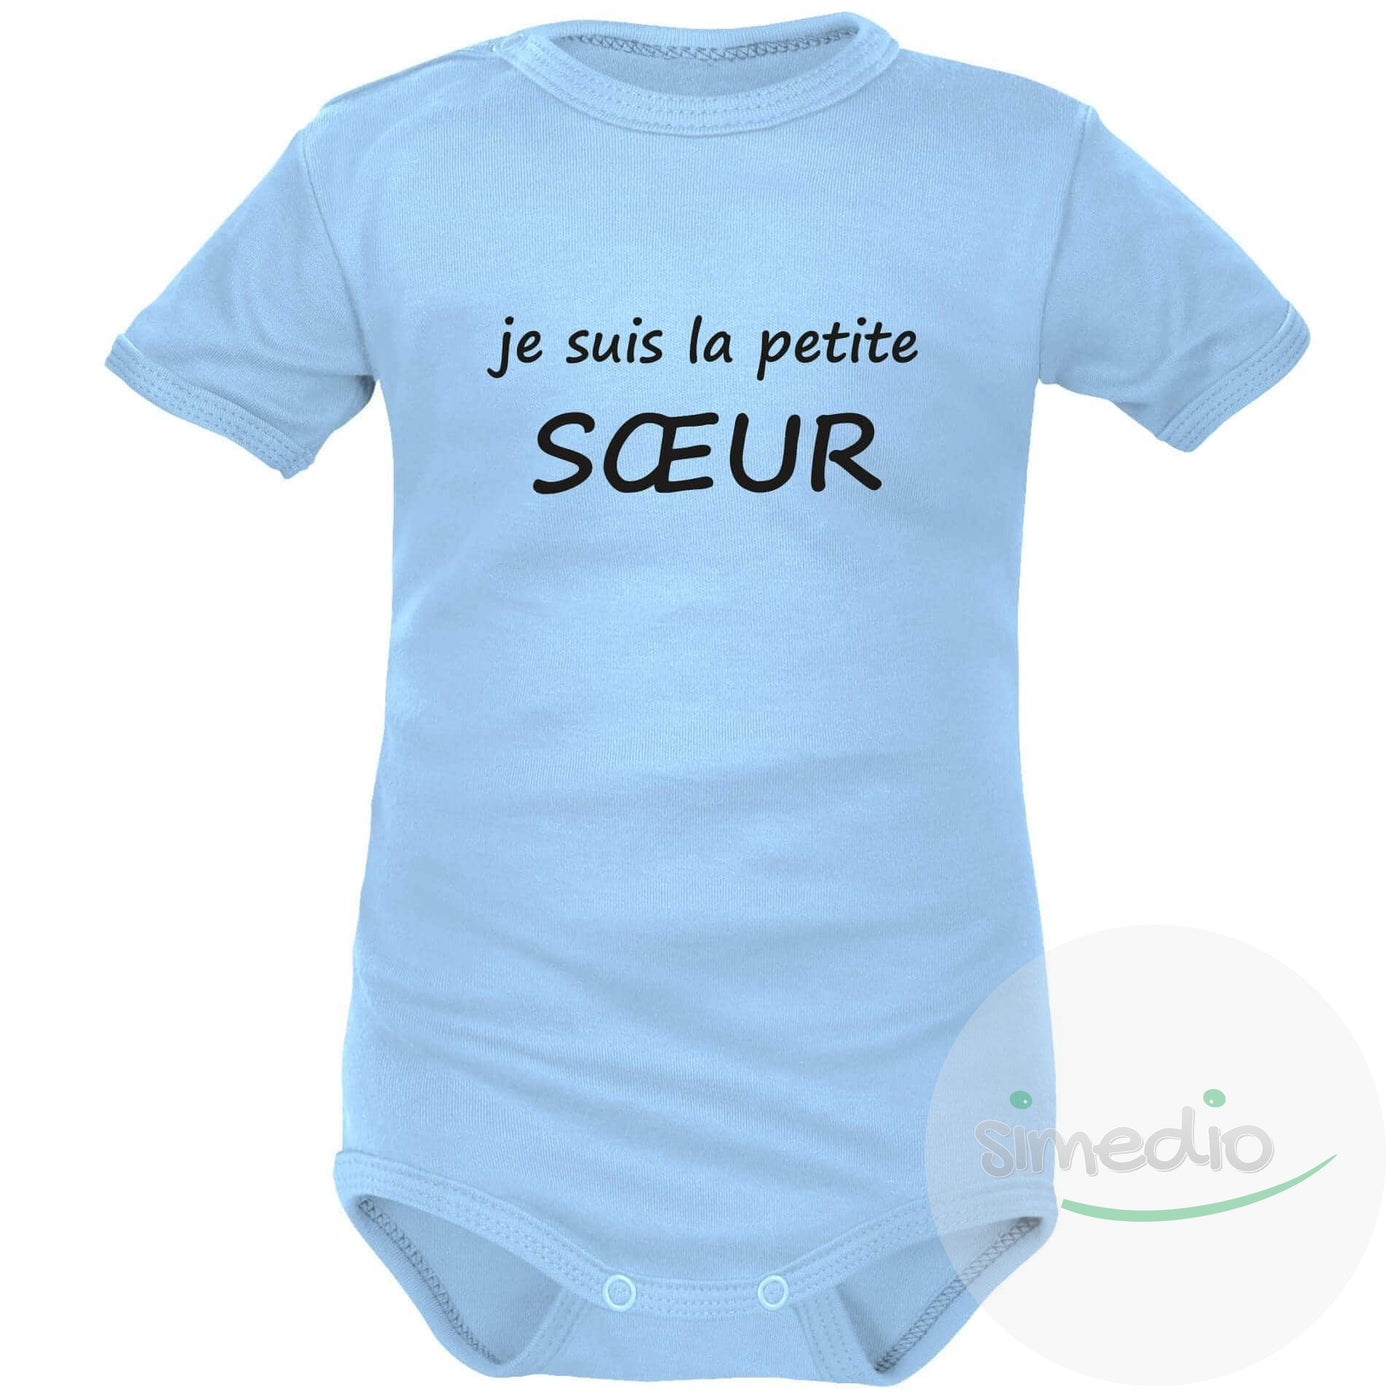 Body bébé avec texte sympa : je suis la petite SOEUR, Bleu, Courtes, 0-1 mois - SiMEDIO